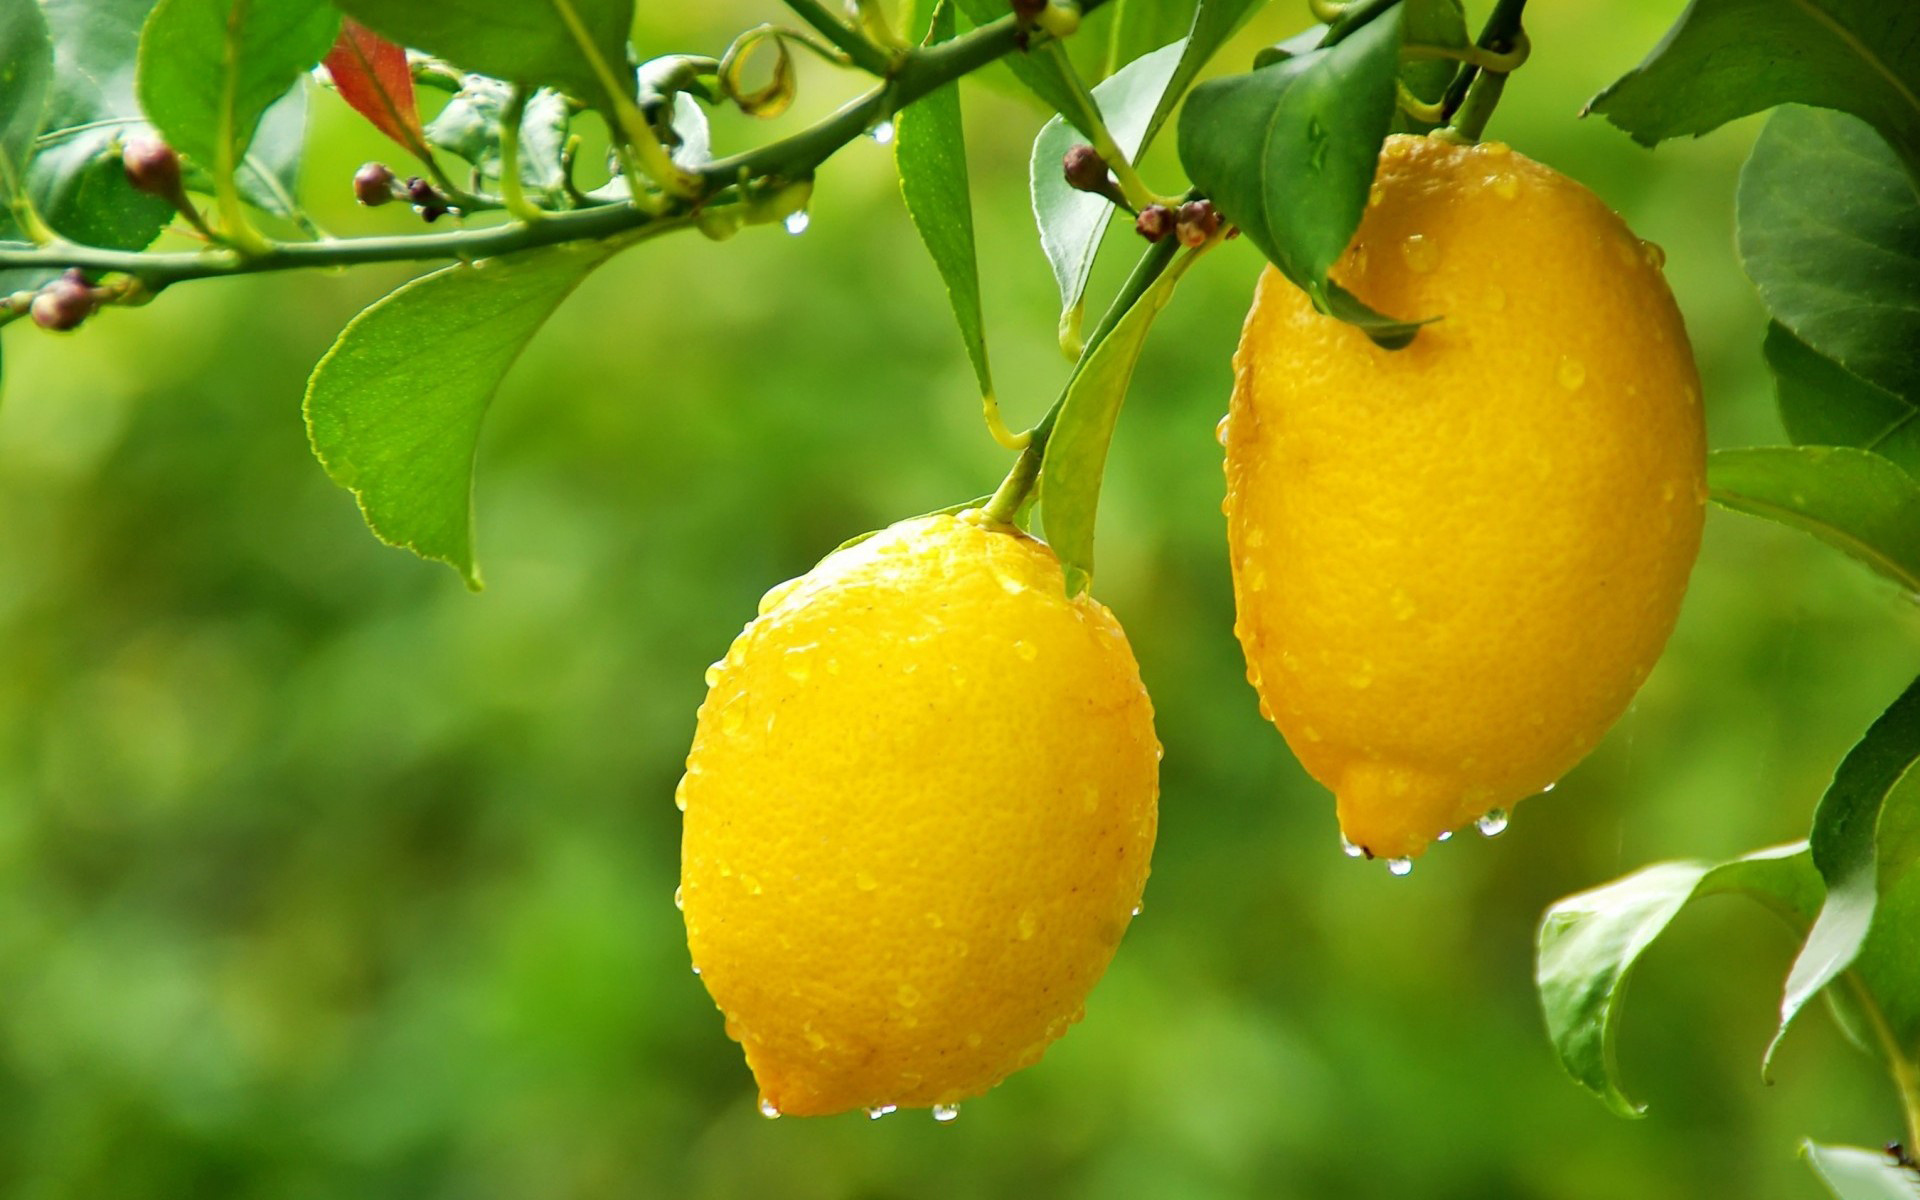 Lemon: Citrus tree, Known for its distinctive sour taste. 1920x1200 HD Wallpaper.